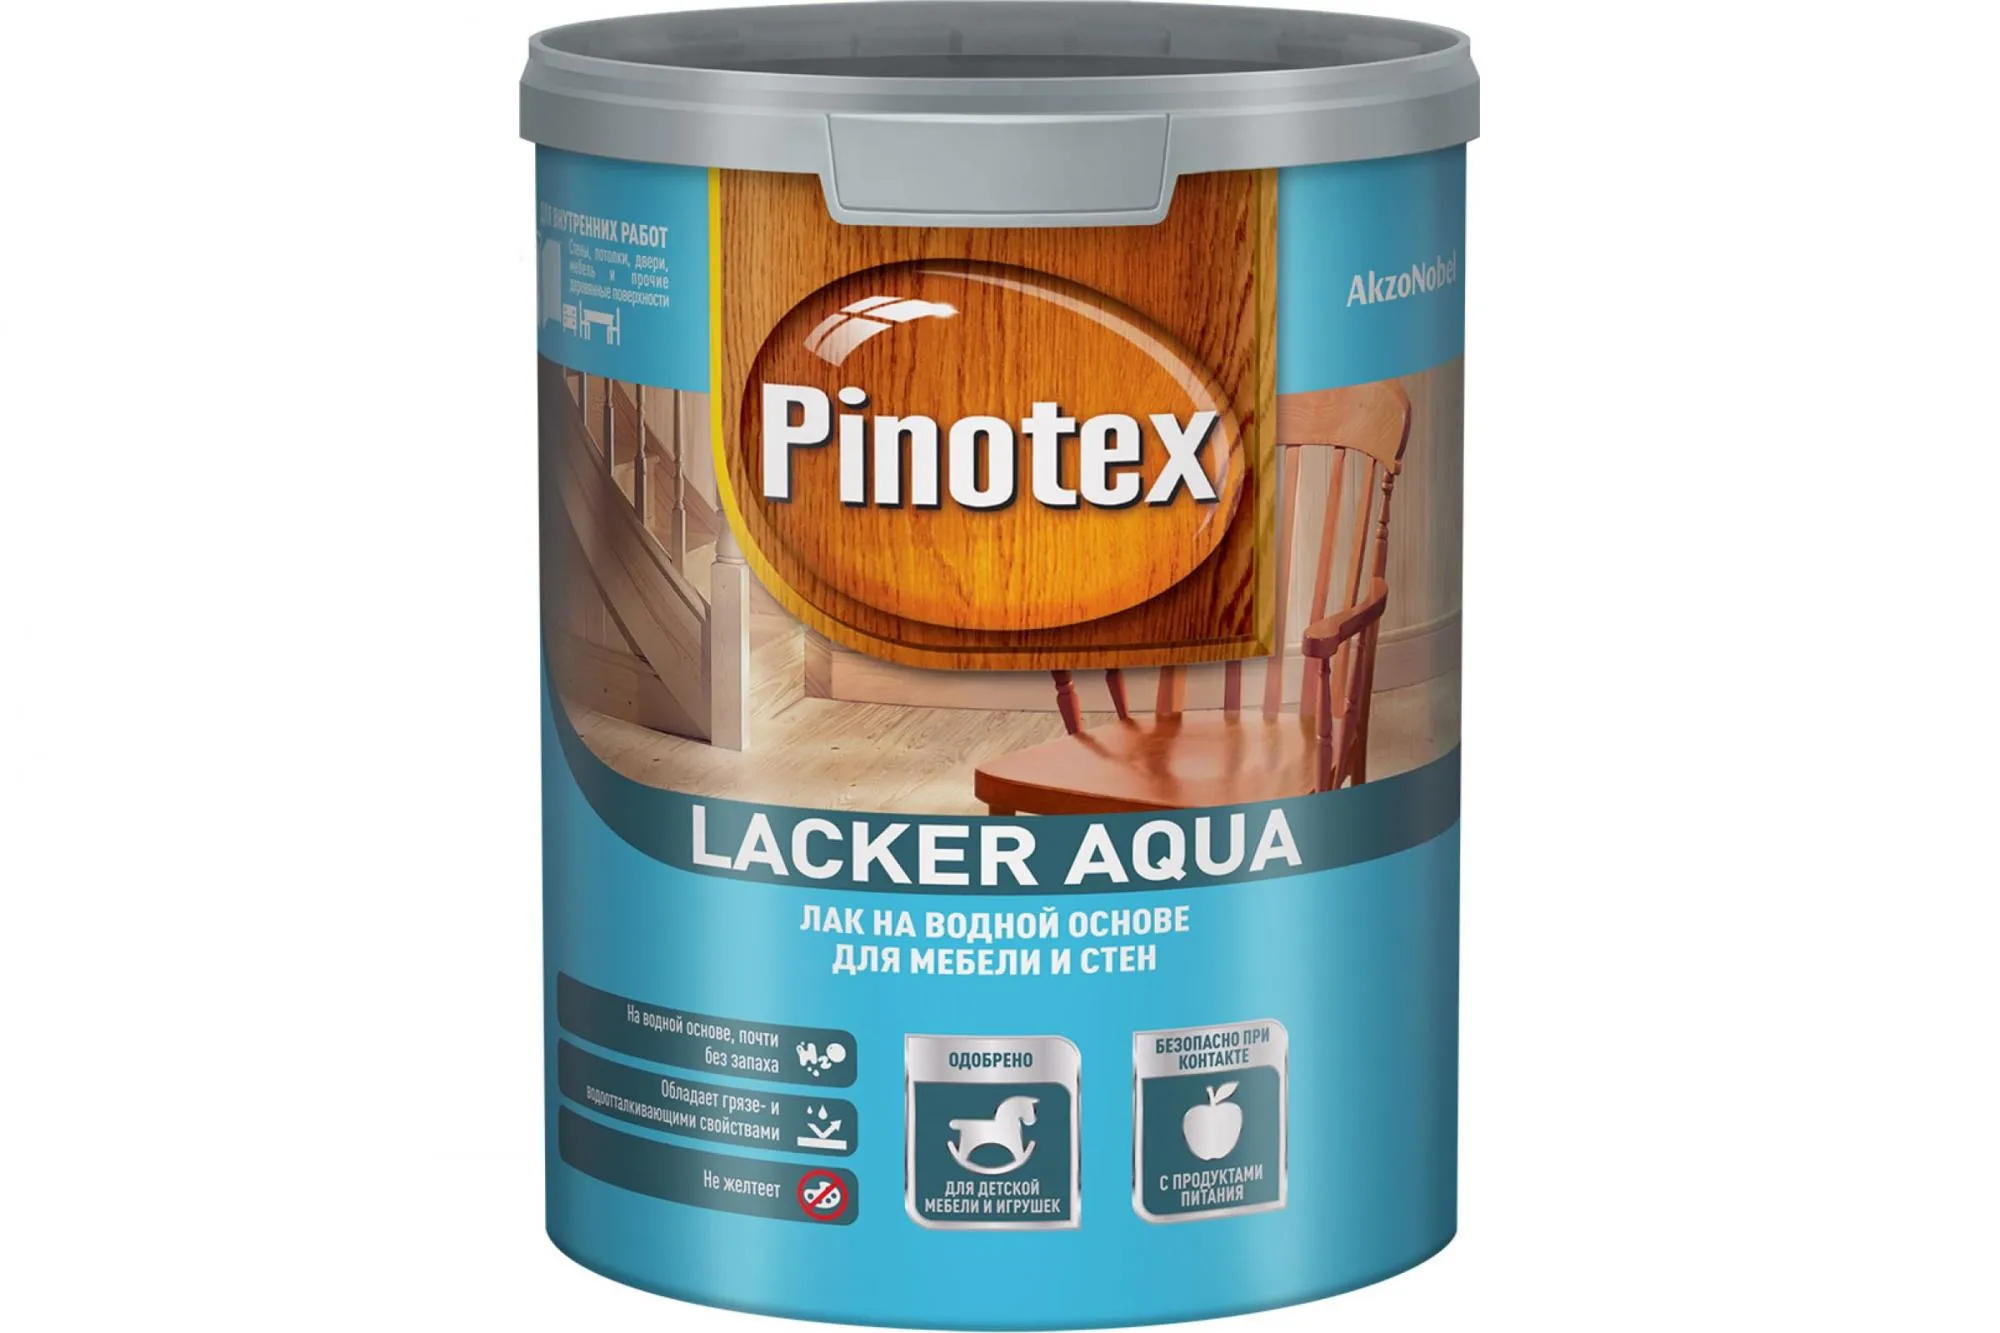 Pinotex Lacker Aqua 70 лак на водной основе для мебели и стен глянцевый. Pinotex Lacker Sauna оттенок 029. Pinotex Lacker Aqua 003. Лак огнезащитный Пиропласт-хв. Лак для мебели без запаха